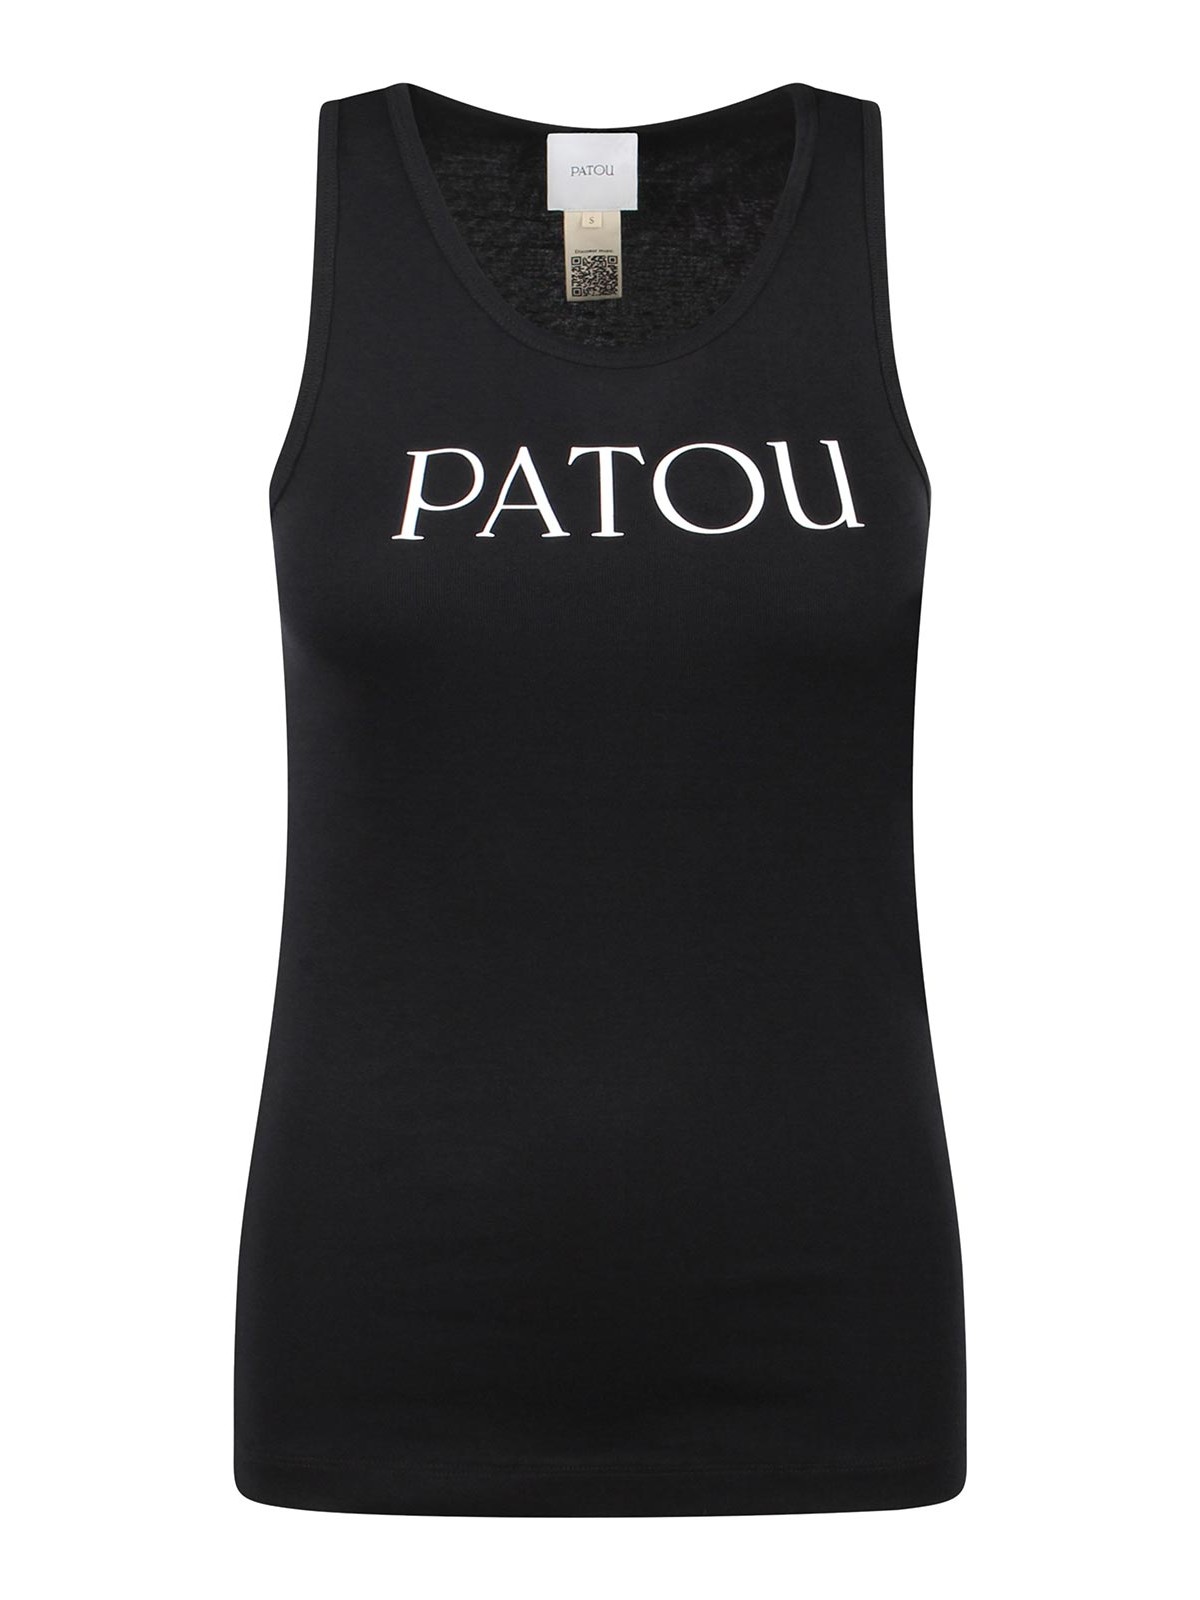 Patou Printed Tank Top In Black